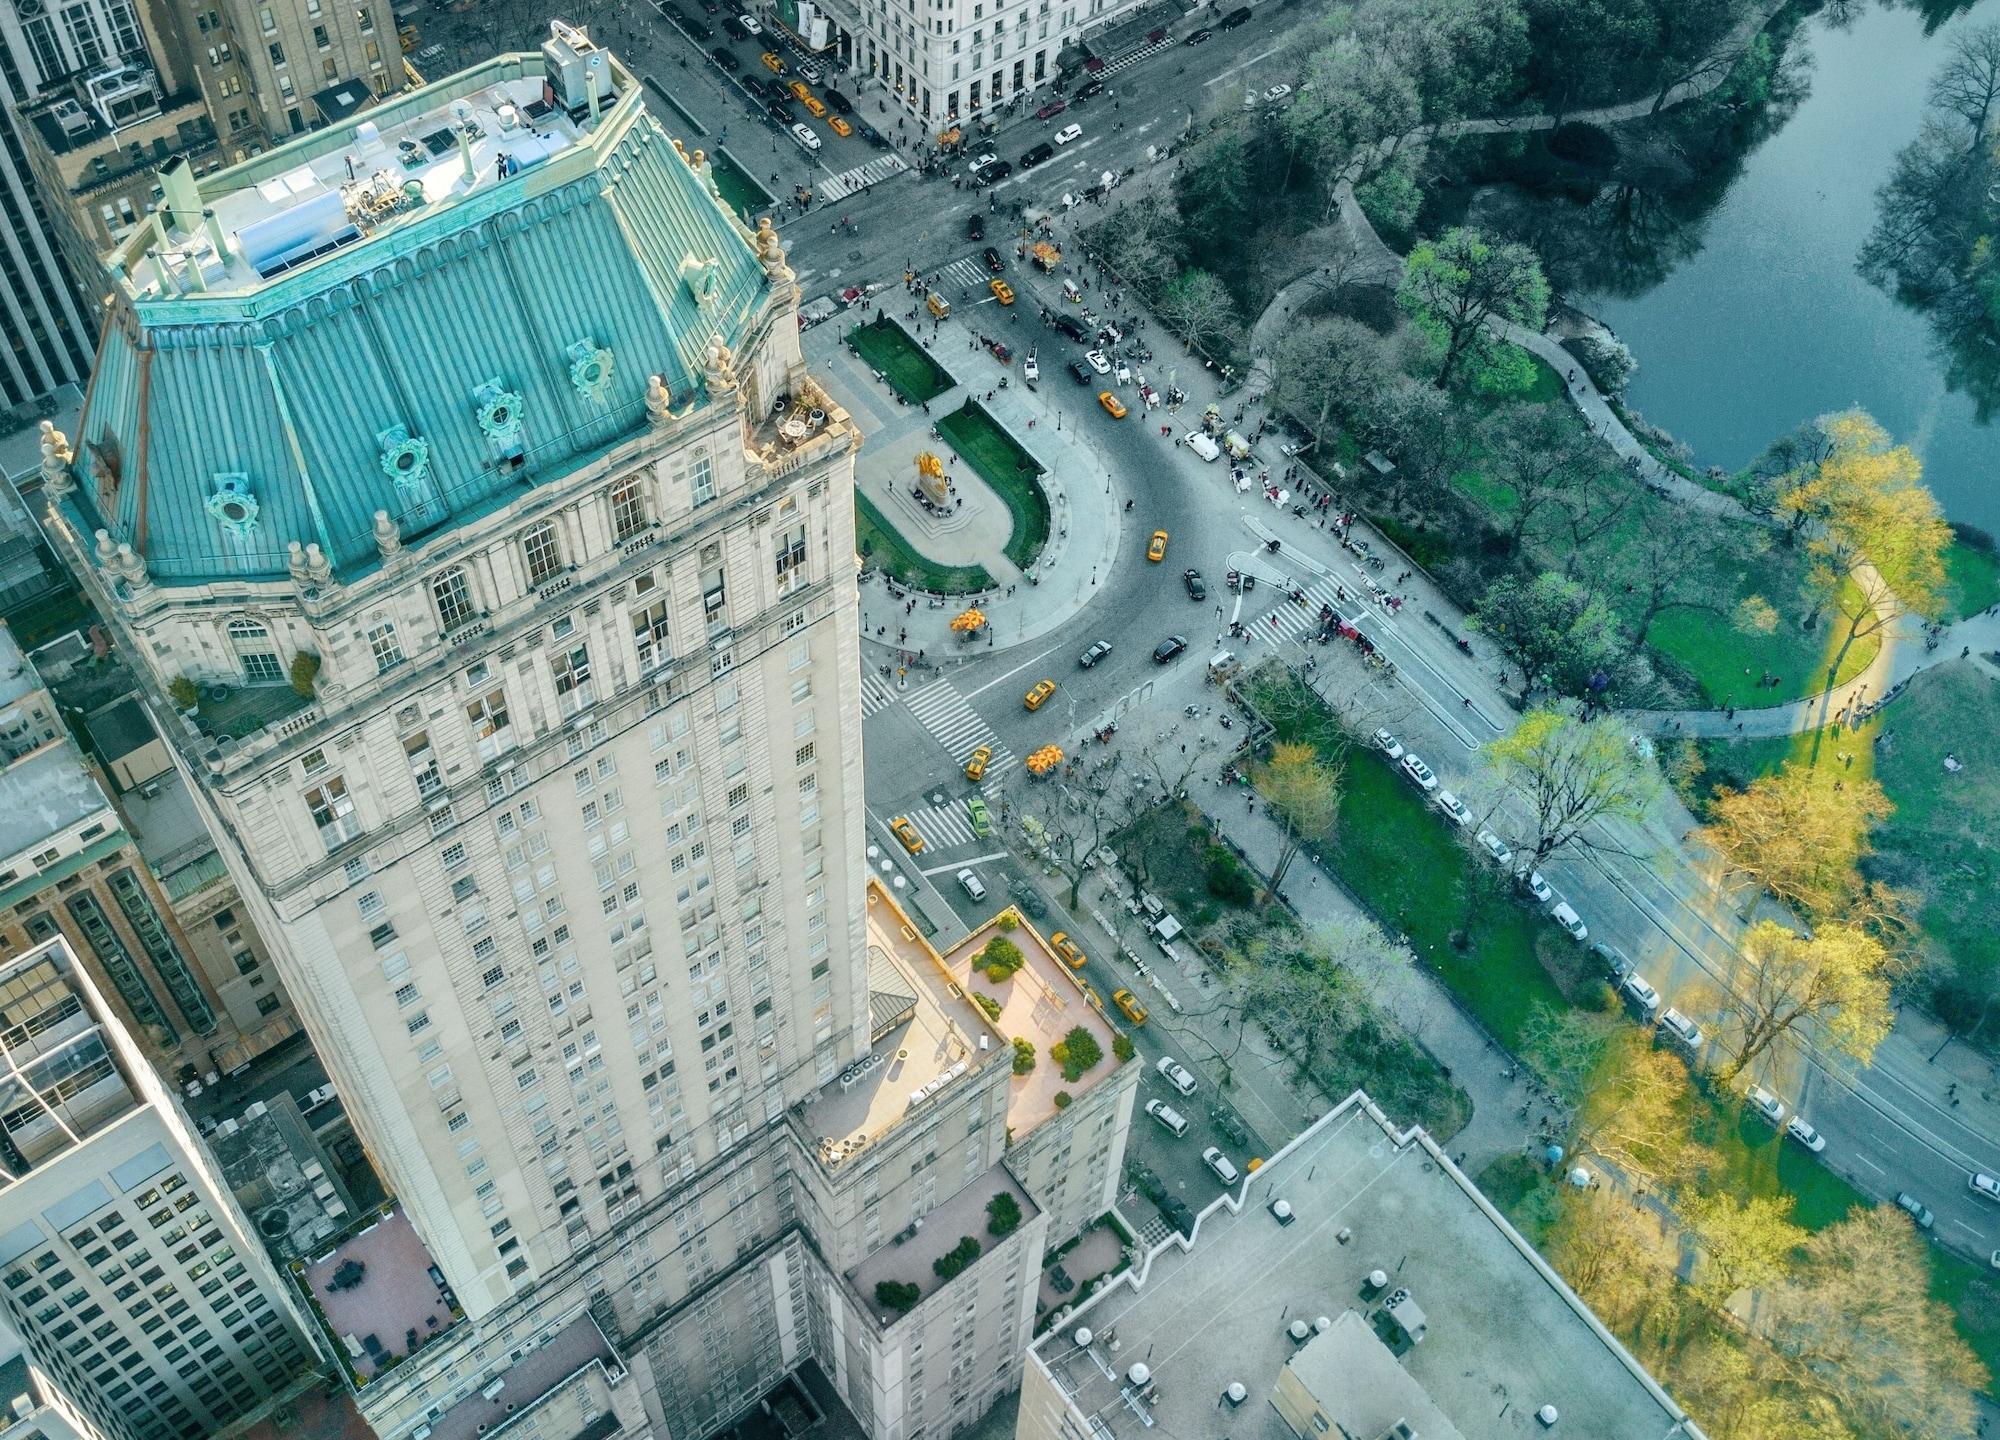 The Pierre, A Taj Hotel, Нью-Йорк Экстерьер фото